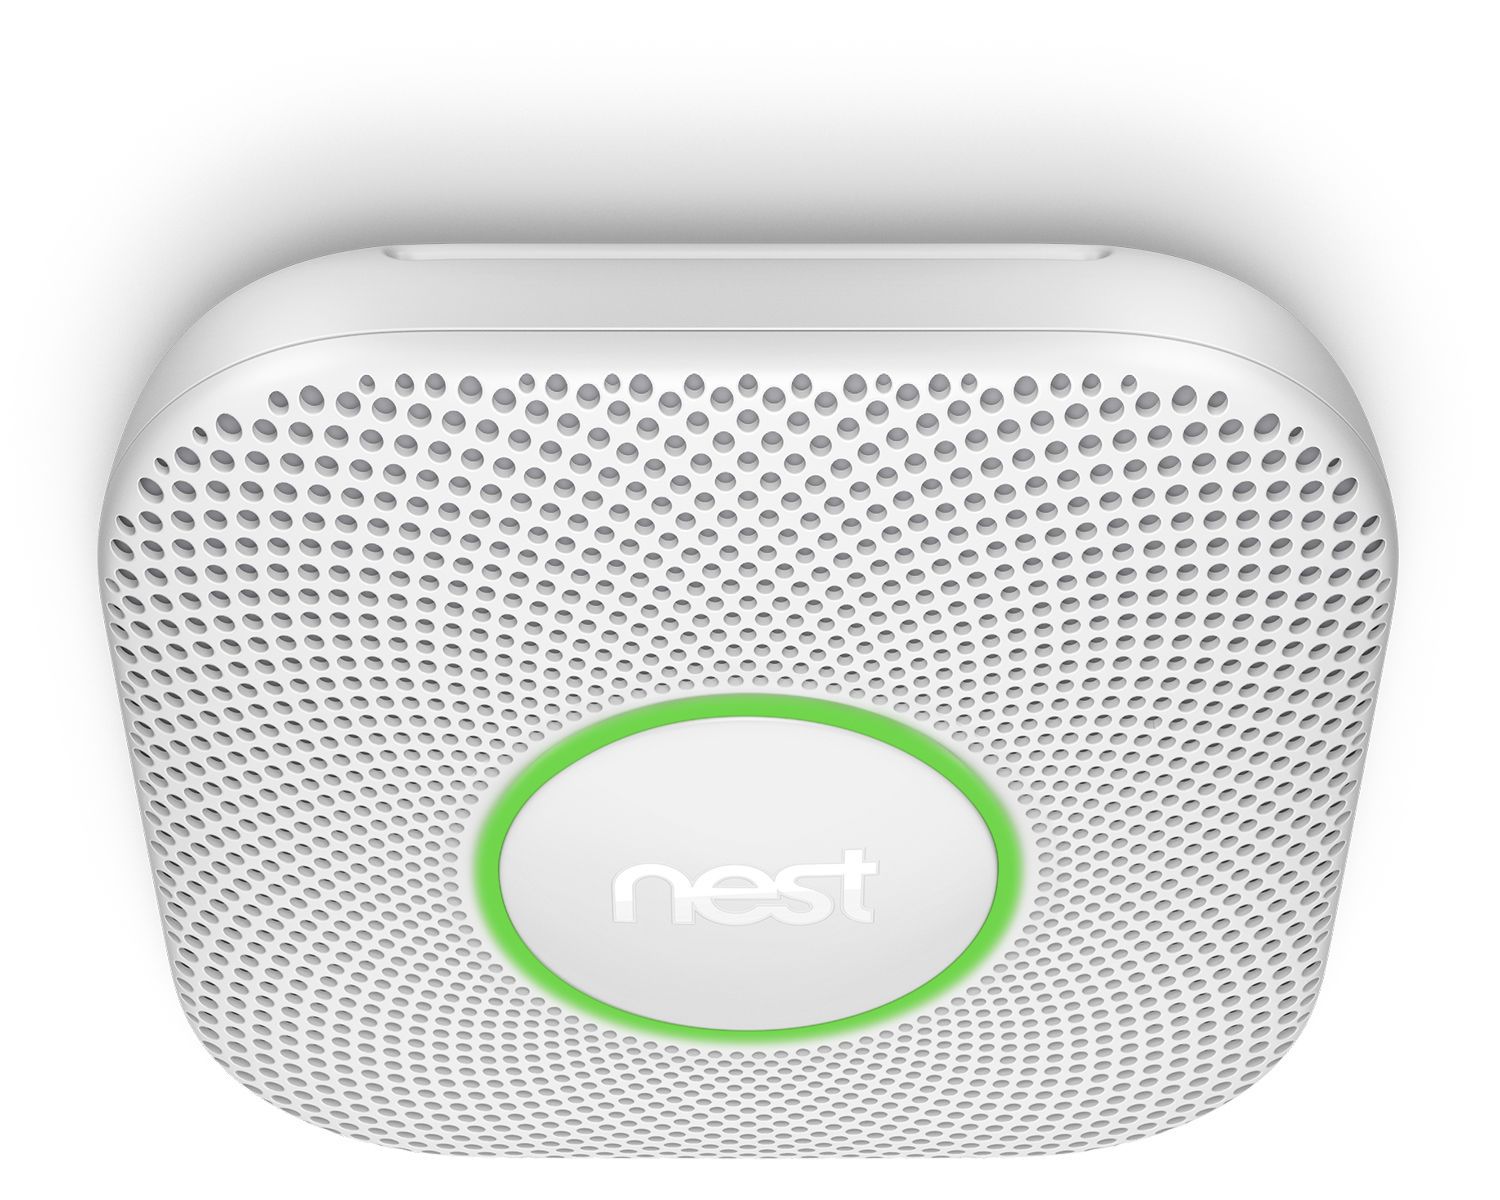 Google Nest Mains-powered Smoke & carbon monoxide alarm